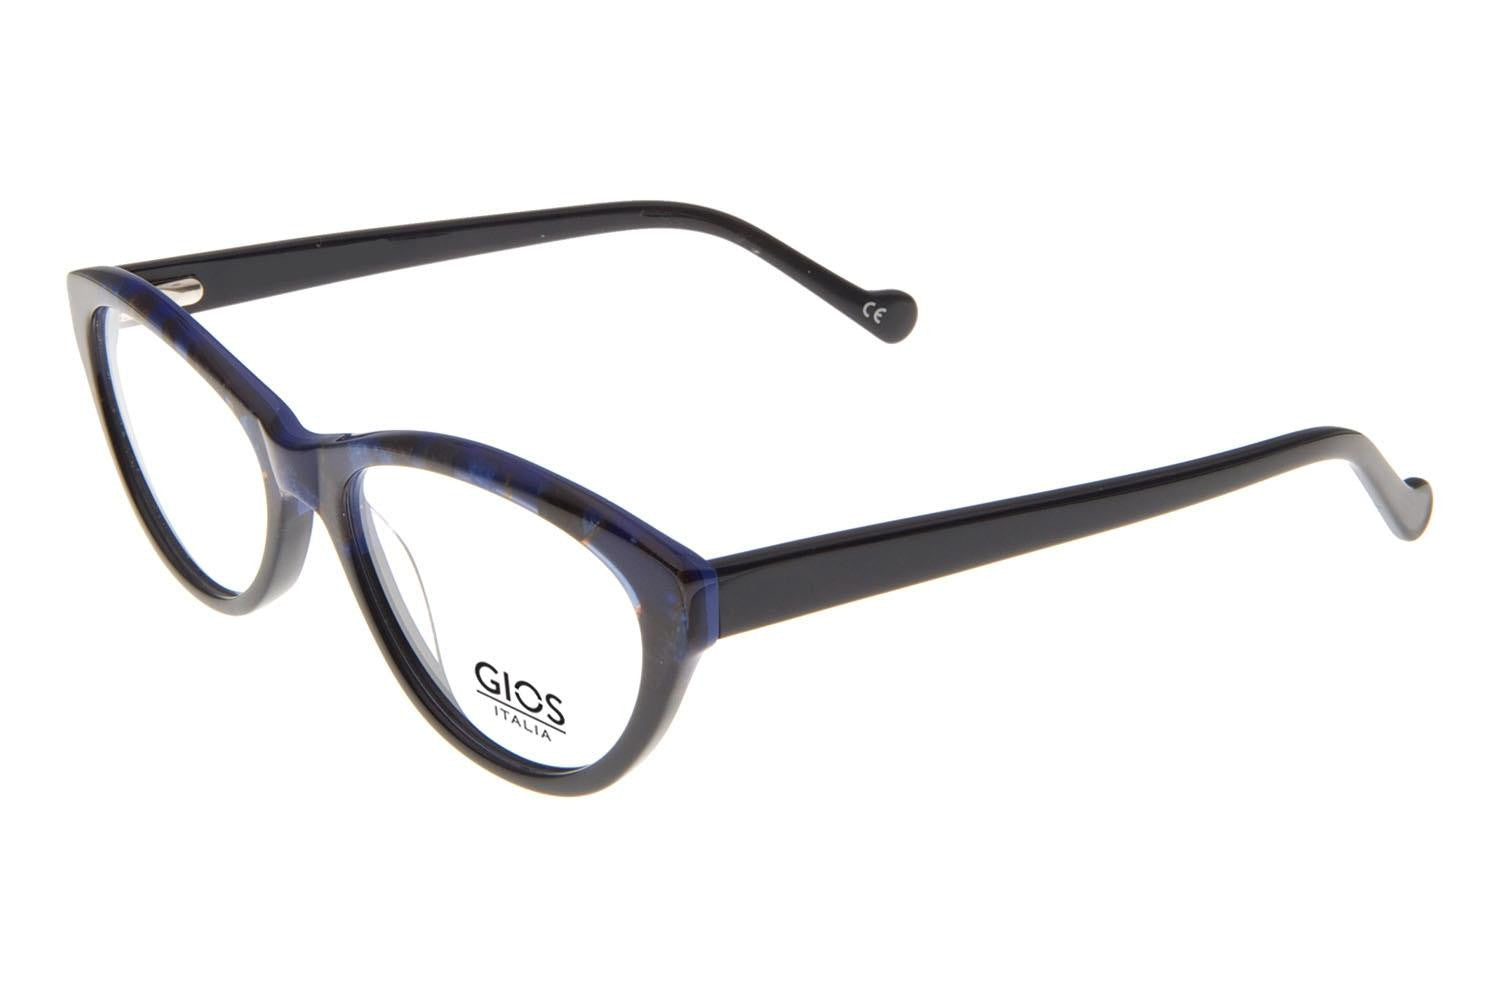 GIOS ITALIA Eyeglasses GRF500092